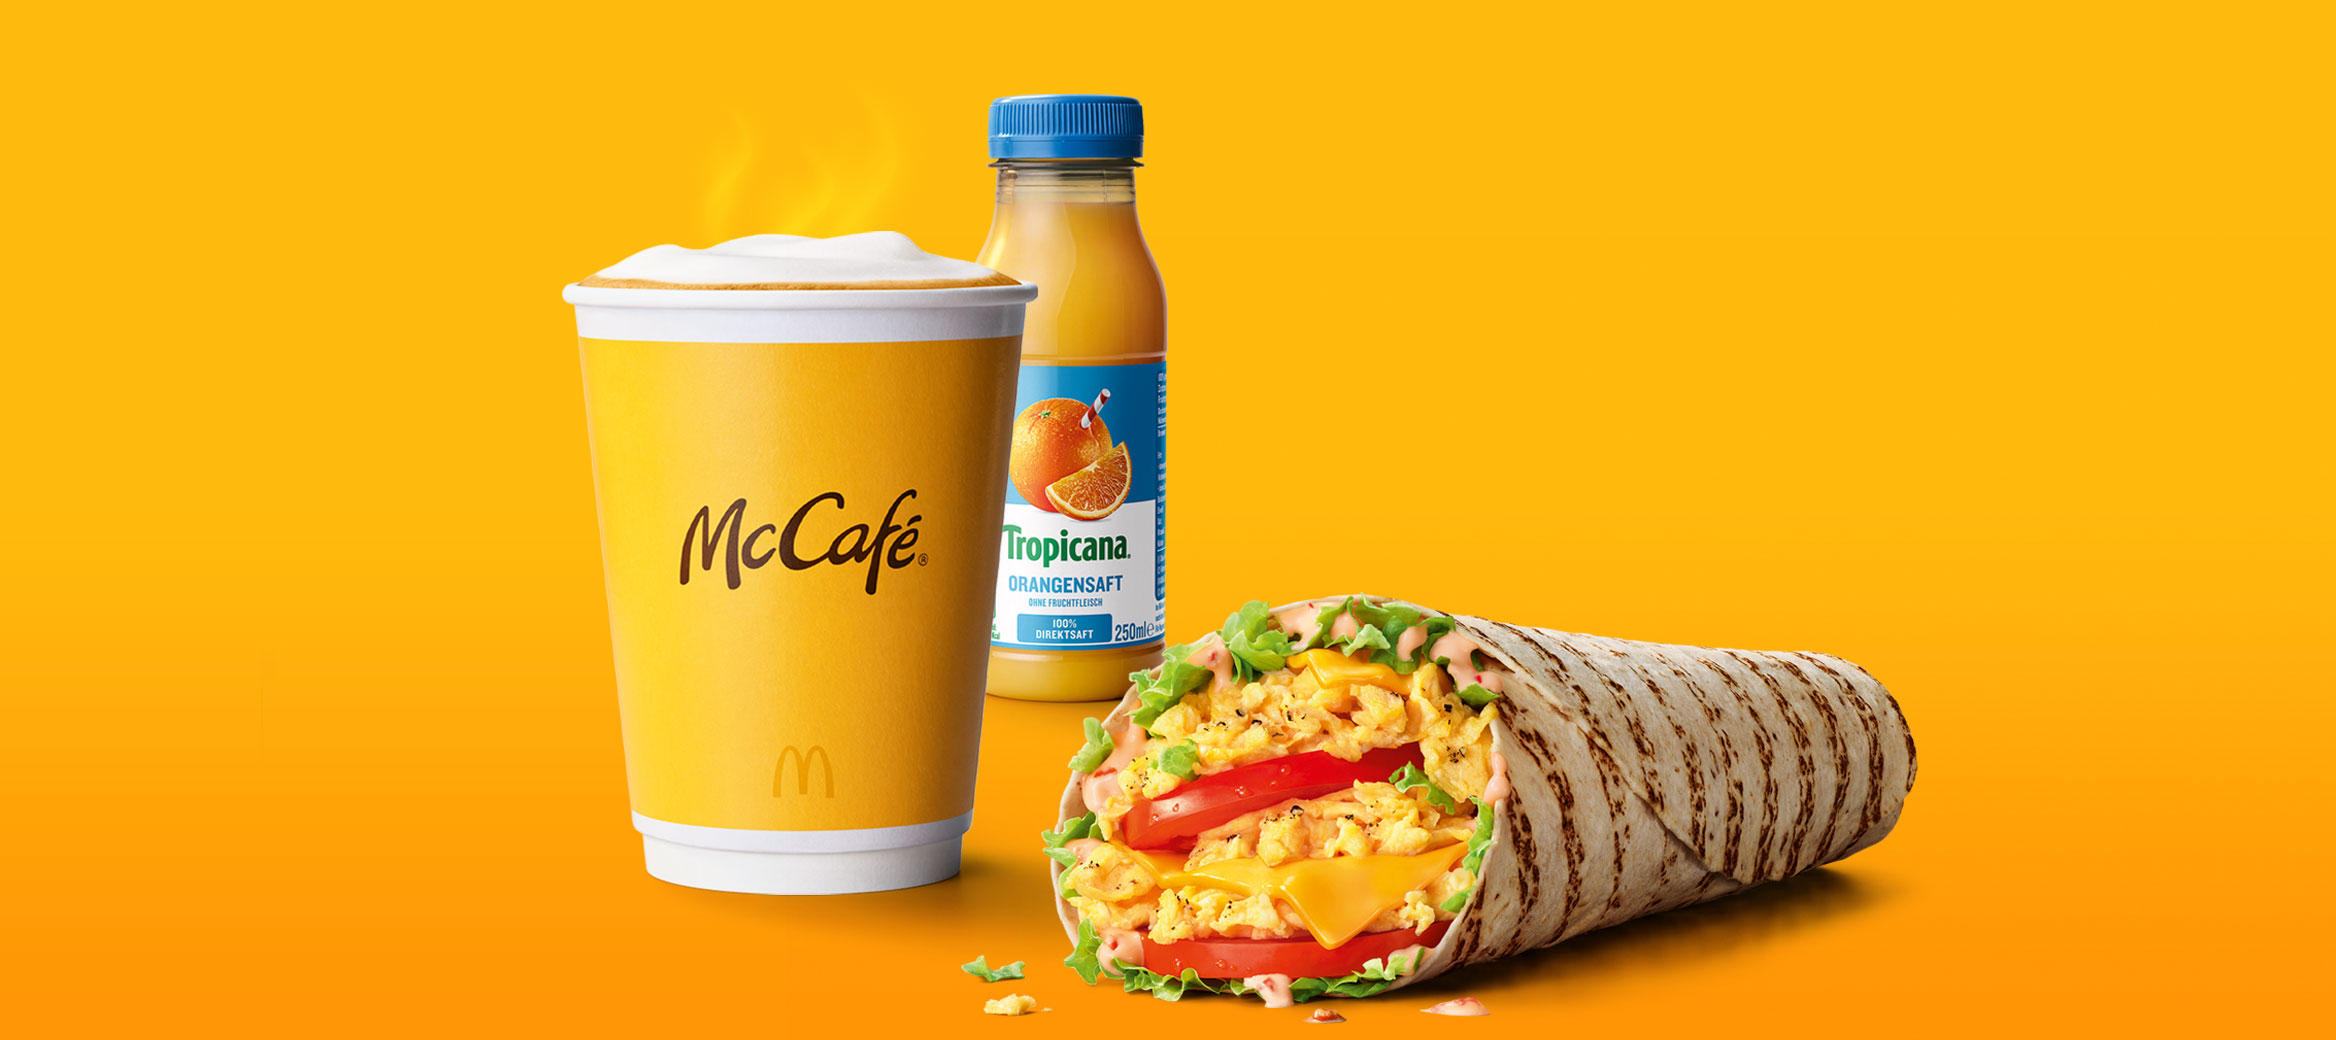 Das Bild zeigt einen dampfenden Becher Kaffee, einen McWrap® Rührei Cheese und einen Orangensaft.